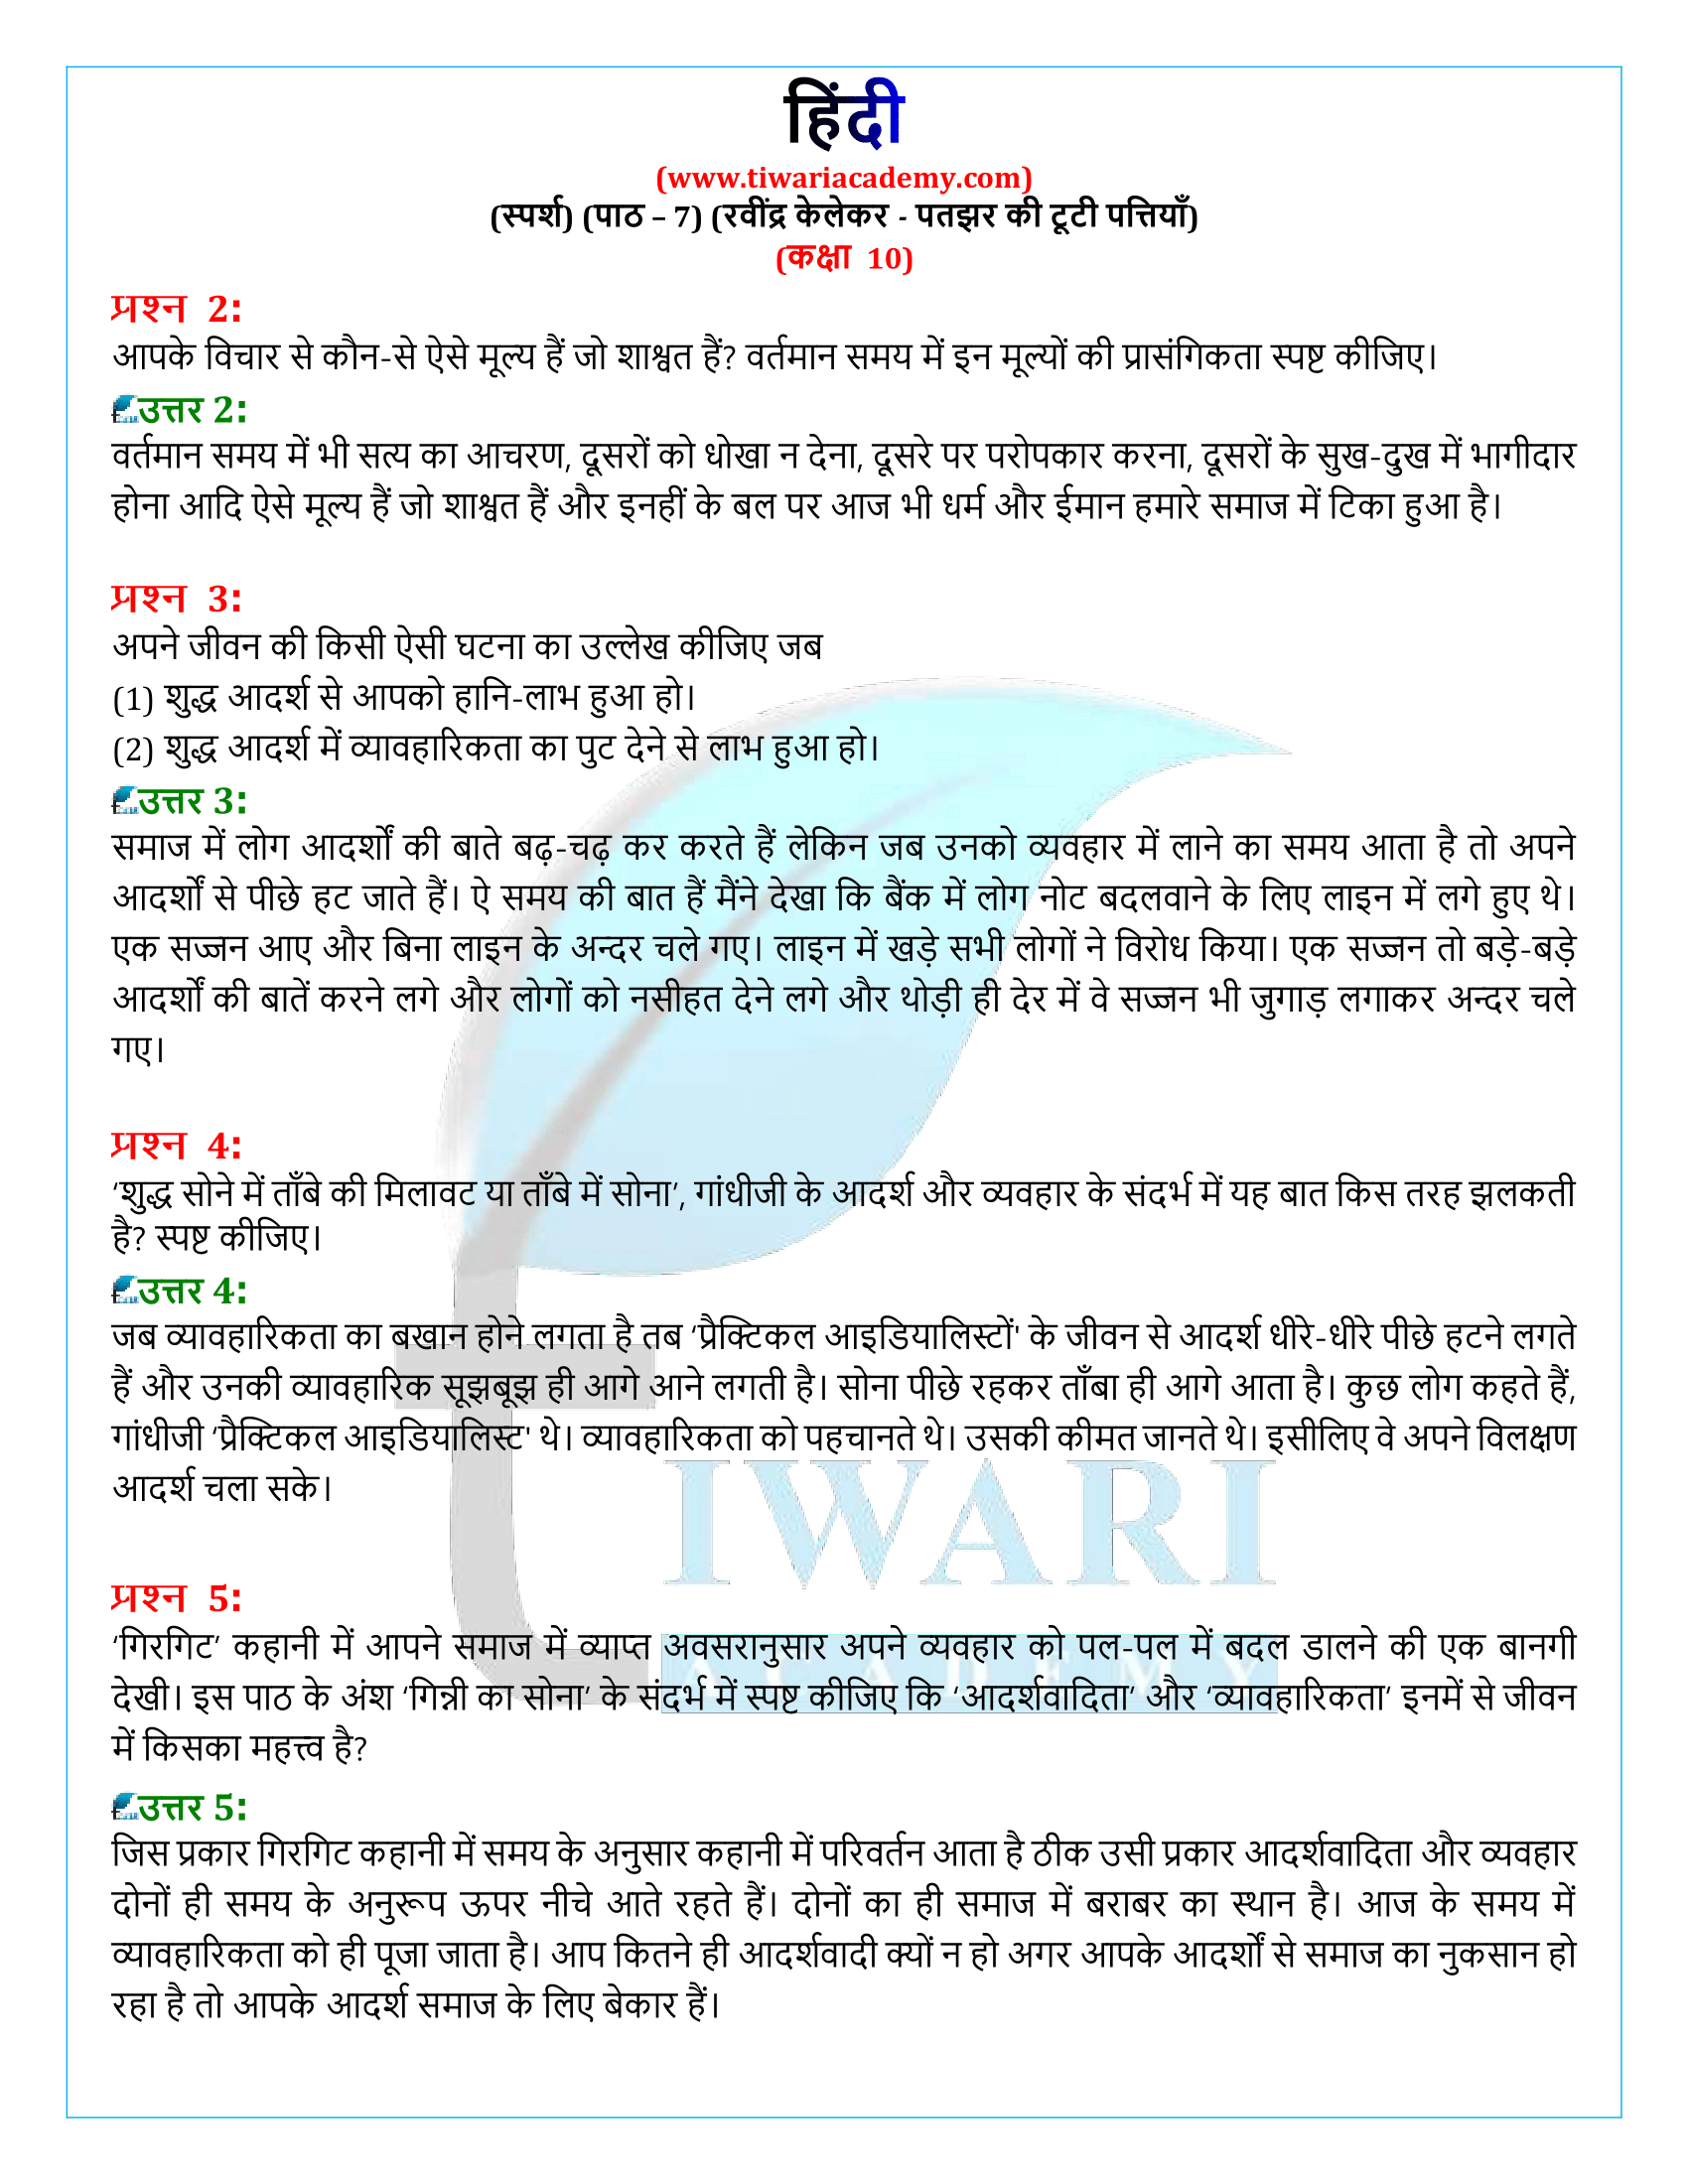 कक्षा 10 हिंदी स्पर्श गद्य अध्याय 7